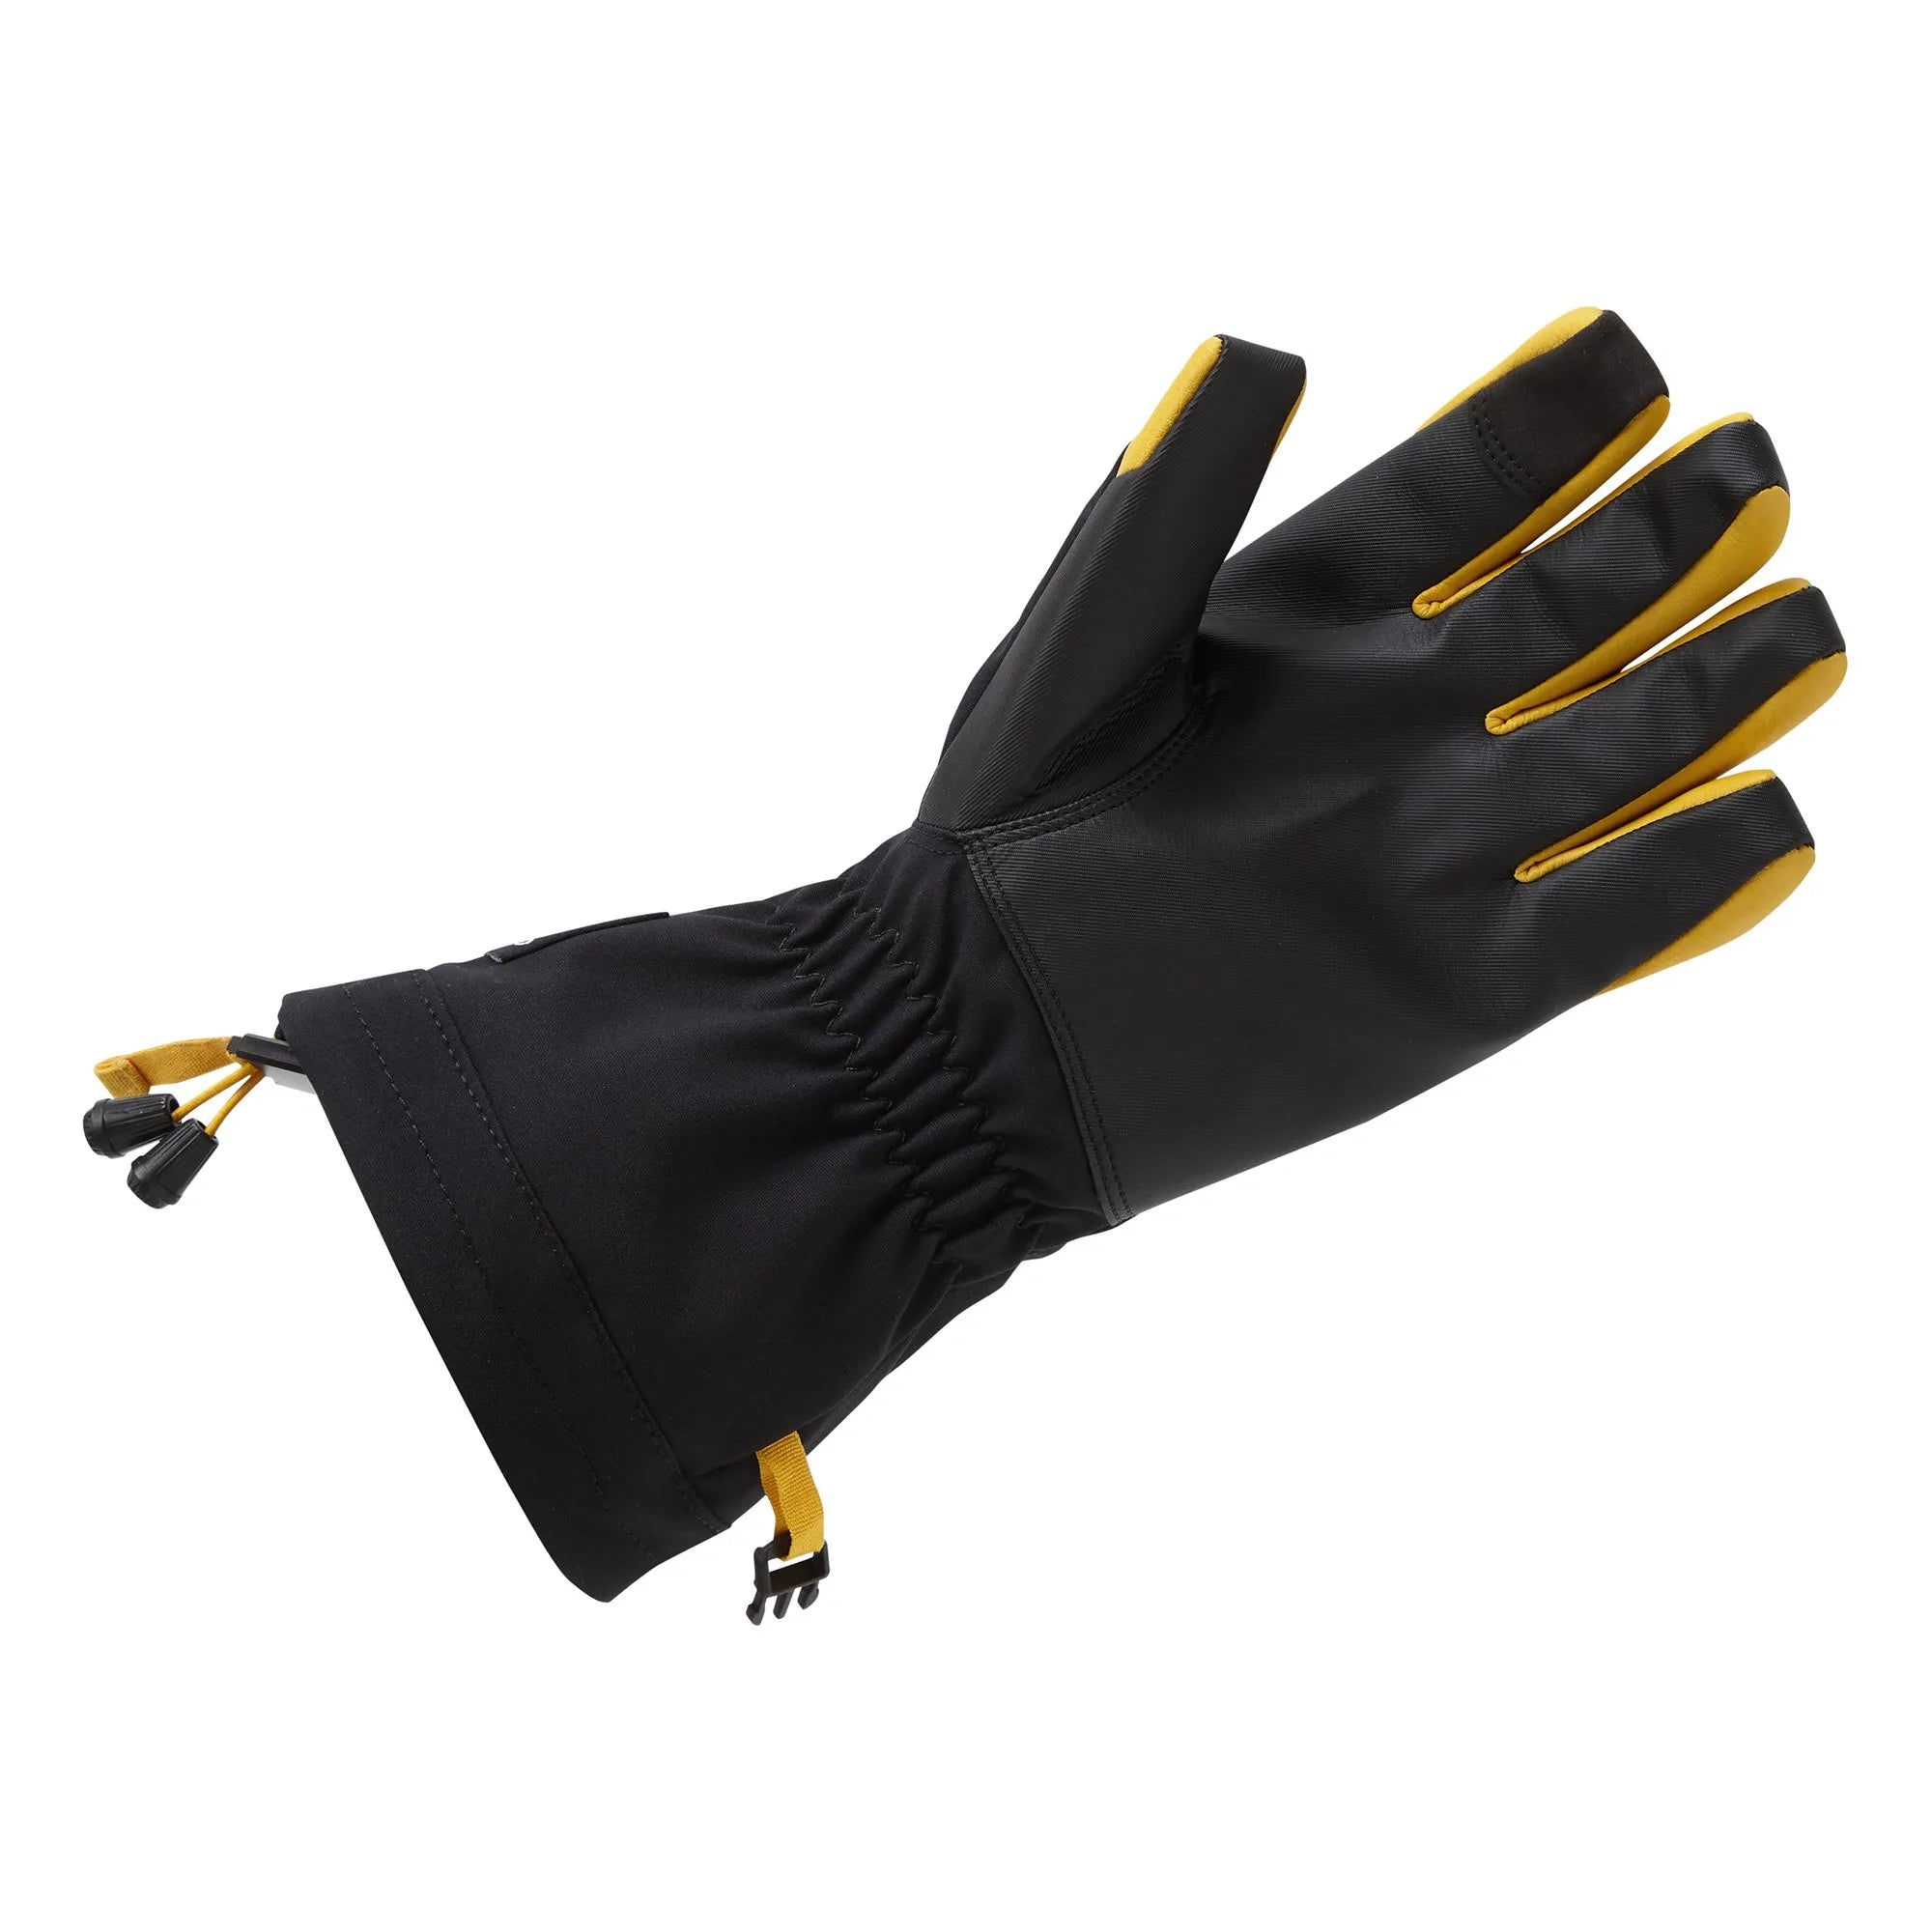 Helmsman Gloves - Black